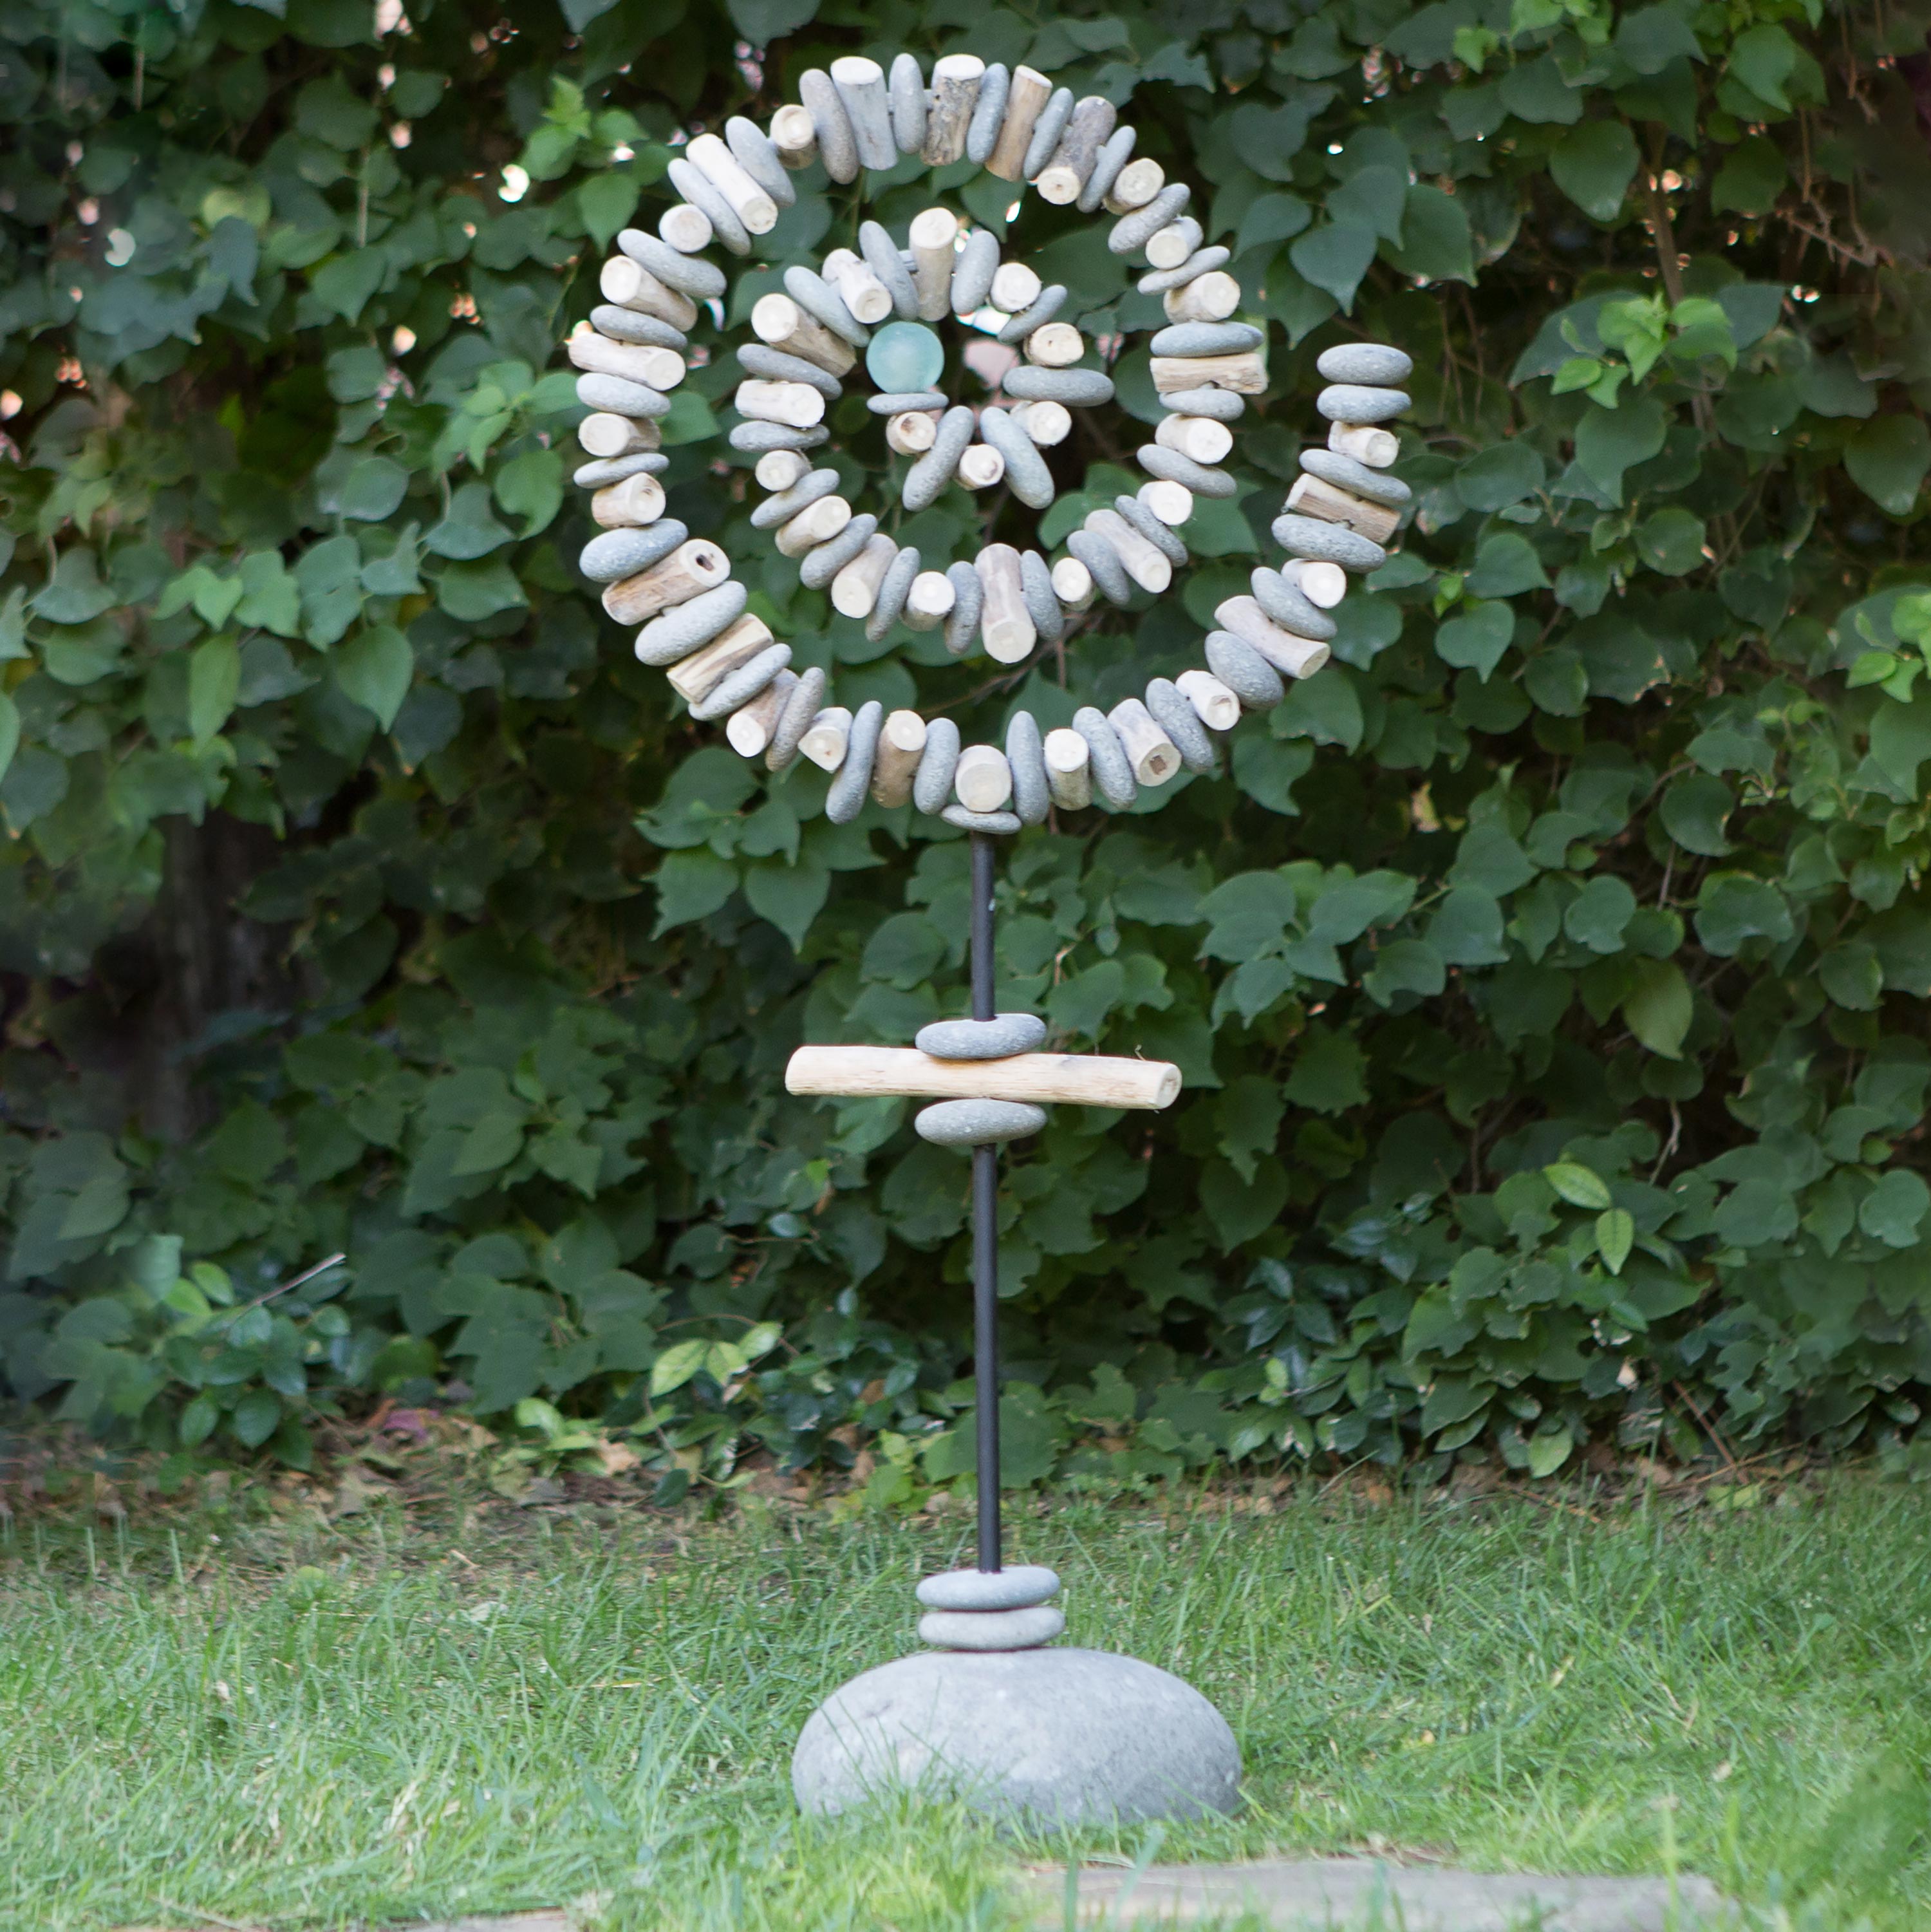 Stone Spiral Garden Sculpture with Glass Sphere